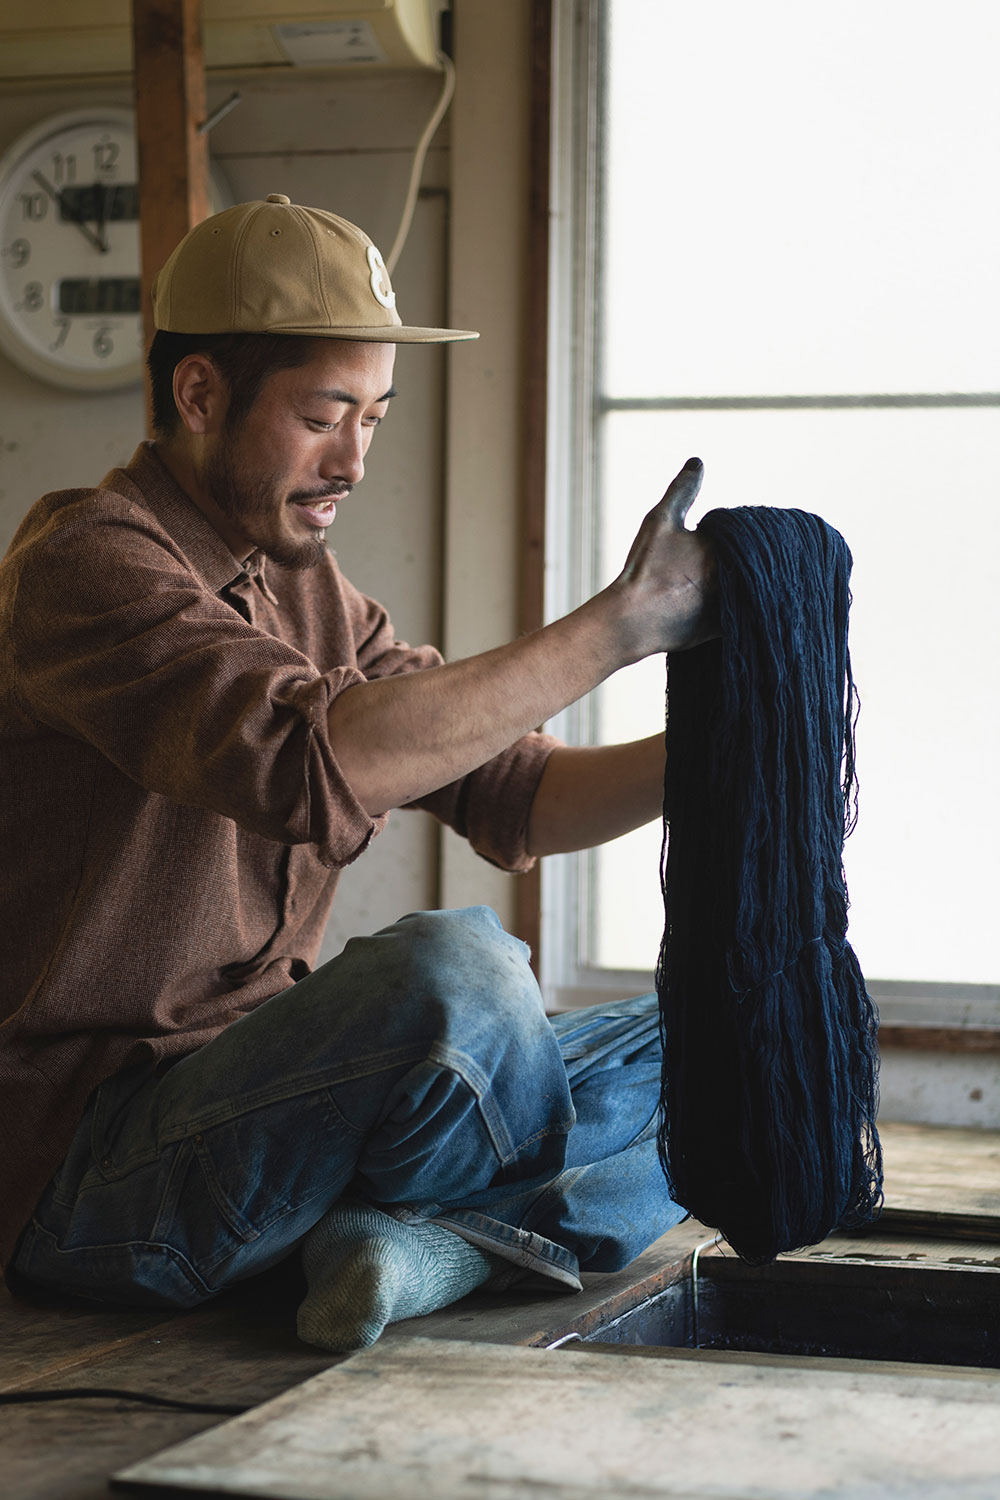 主宰の藤井健太さんが半年かけて染めている糸の束。糸染めからの製品作りに力を入れている。